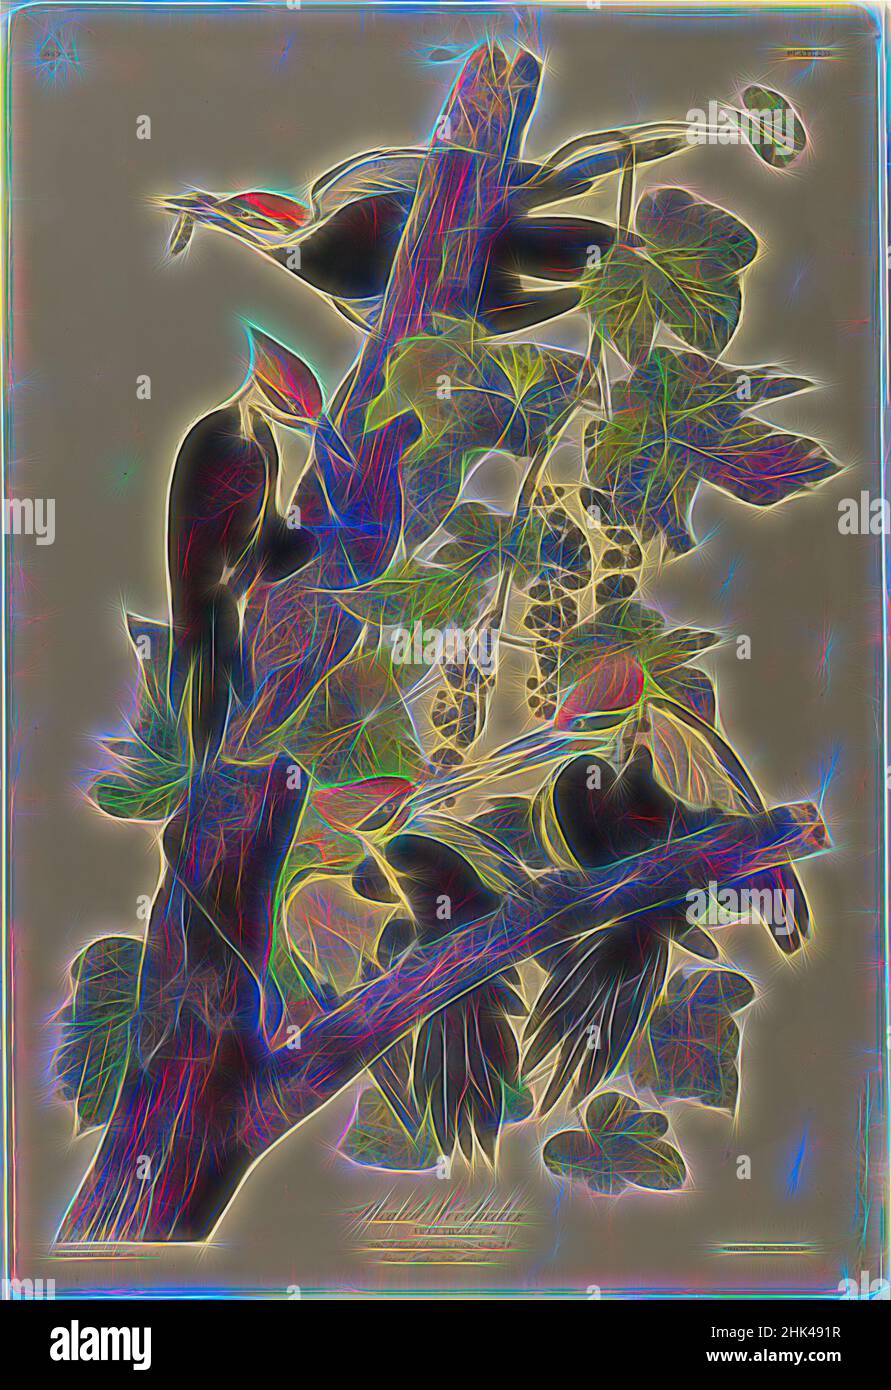 Inspiriert von Pileated Woodpecker, John James Audubon, Amerikaner, geboren in Haiti, 1785-1851, Chromolithograph, 1861, 40 x 27 Zoll, 101,6 x 68,6 cm, Zweige, Fauna, Flora, Blätter, Naturstudie, Ornithologie, Picus pileatus, Waschbär, Reben, Vitis aestivalis, neu erfunden von Artotop. Klassische Kunst neu erfunden mit einem modernen Twist. Design von warmen fröhlichen Leuchten der Helligkeit und Lichtstrahl Strahlkraft. Fotografie inspiriert von Surrealismus und Futurismus, umarmt dynamische Energie der modernen Technologie, Bewegung, Geschwindigkeit und Kultur zu revolutionieren Stockfoto